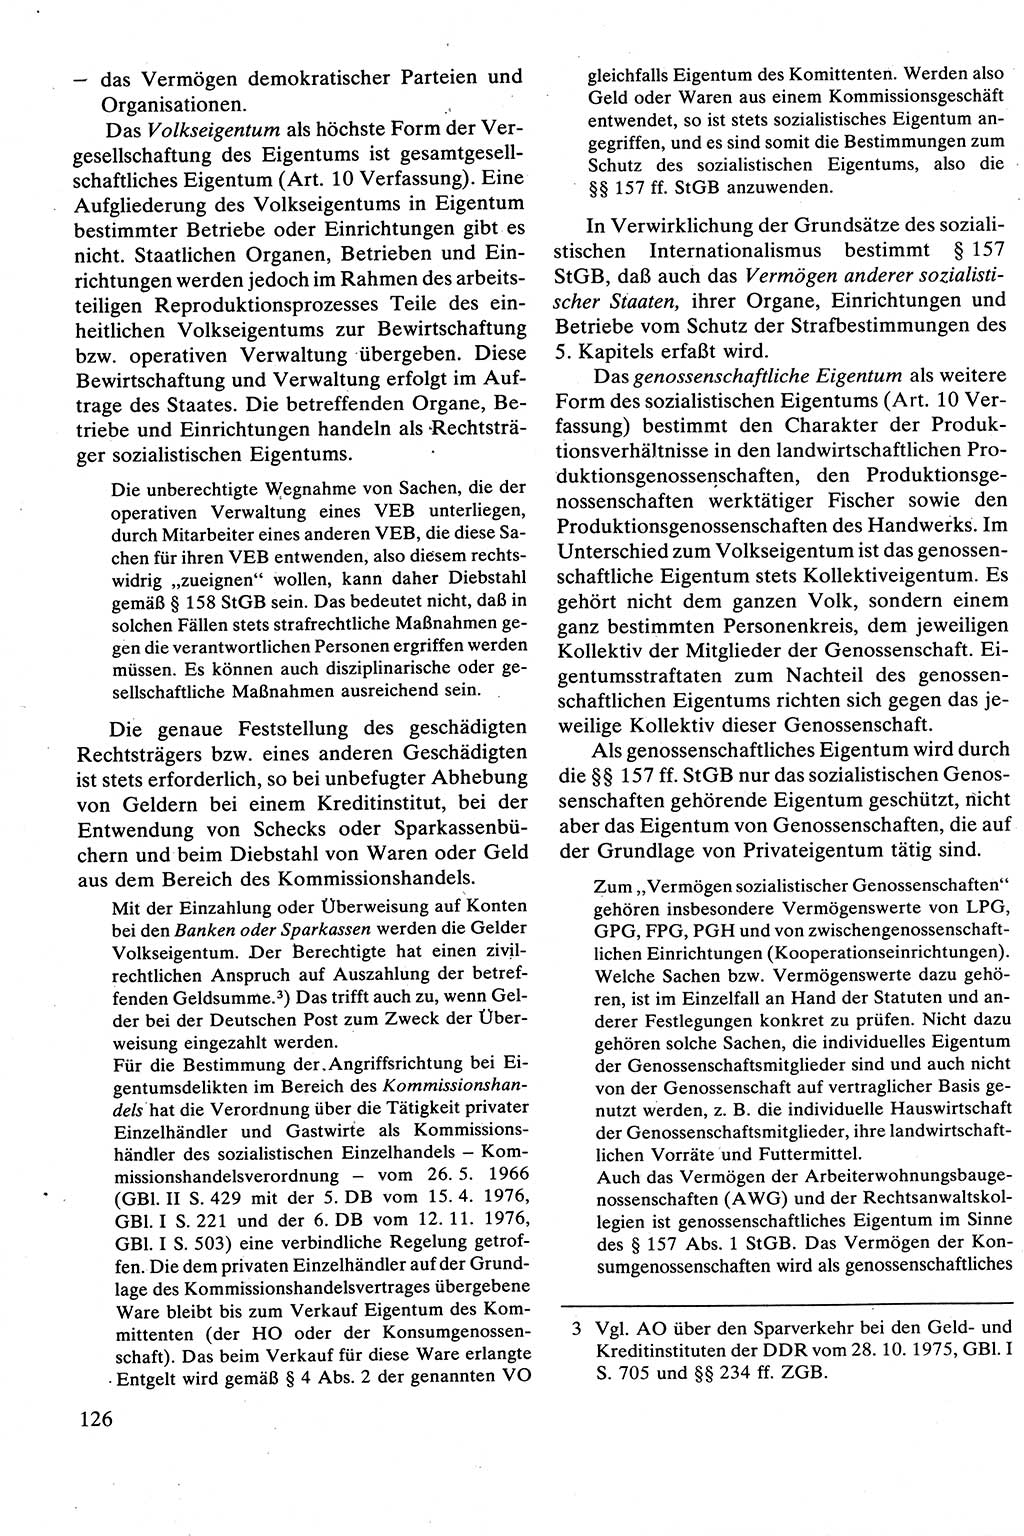 Strafrecht [Deutsche Demokratische Republik (DDR)], Besonderer Teil, Lehrbuch 1981, Seite 126 (Strafr. DDR BT Lb. 1981, S. 126)